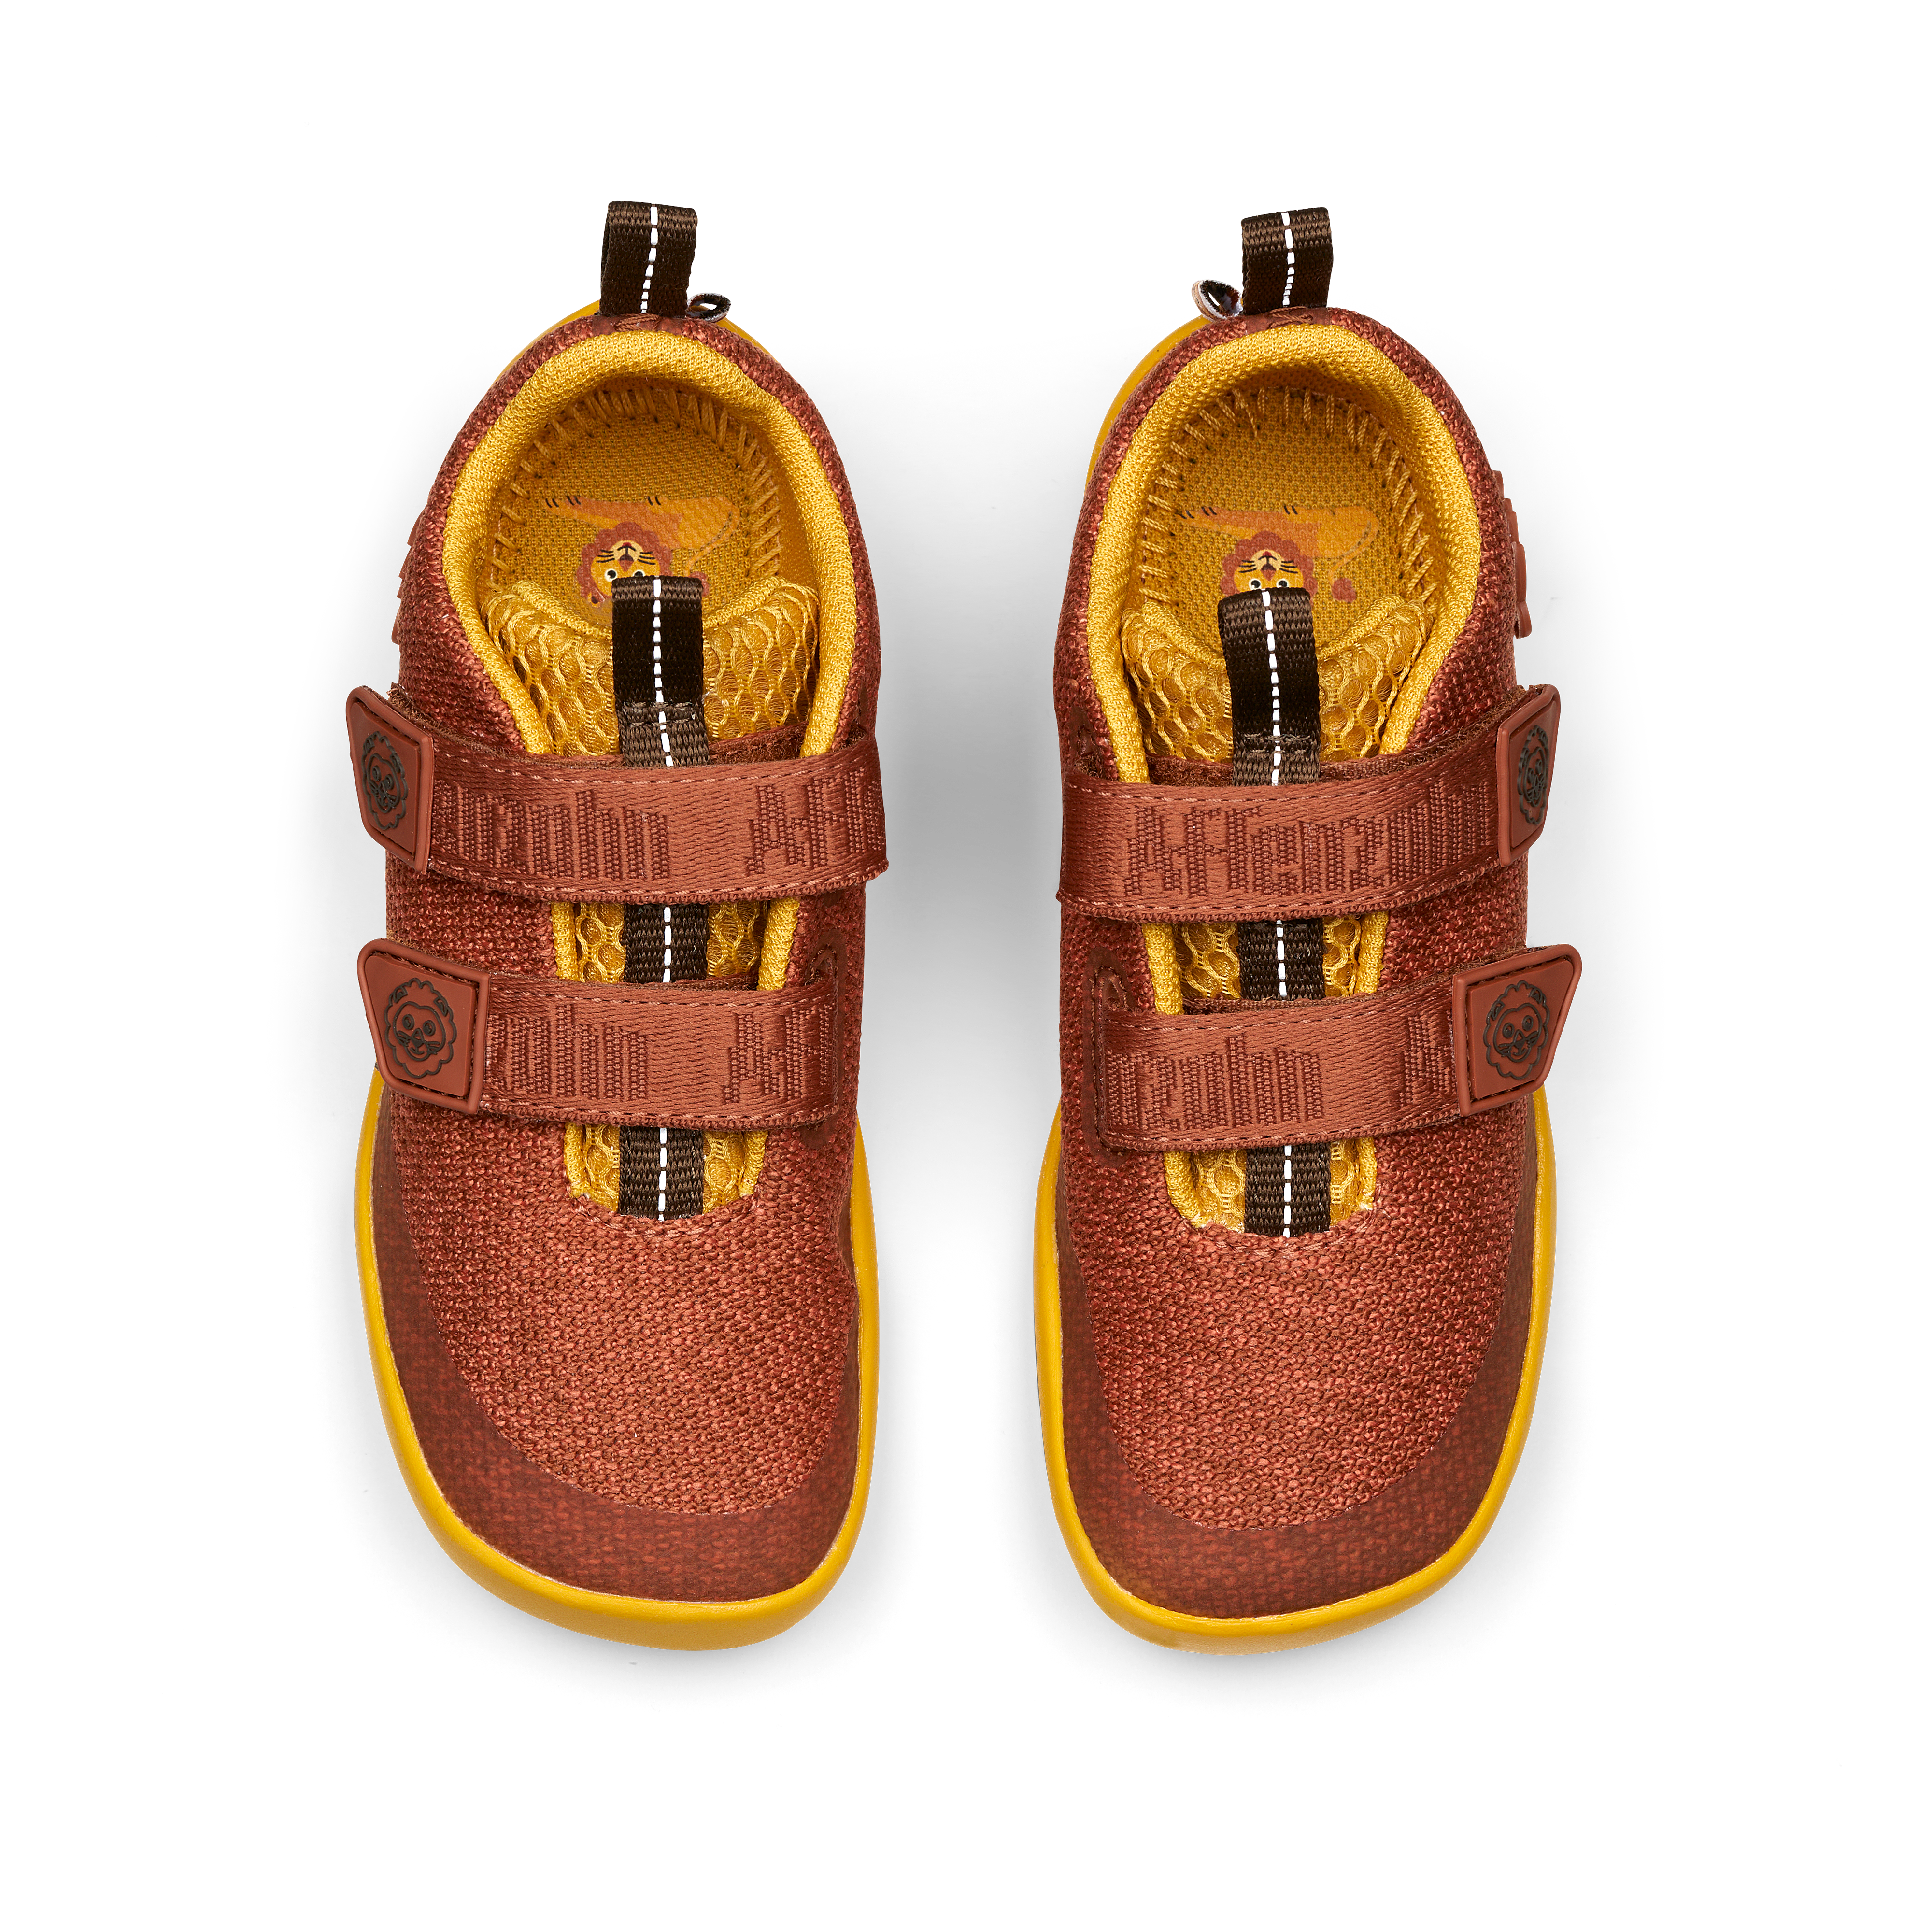 Affenzahn Knit Happy barfods sneakers til børn i farven lion, top